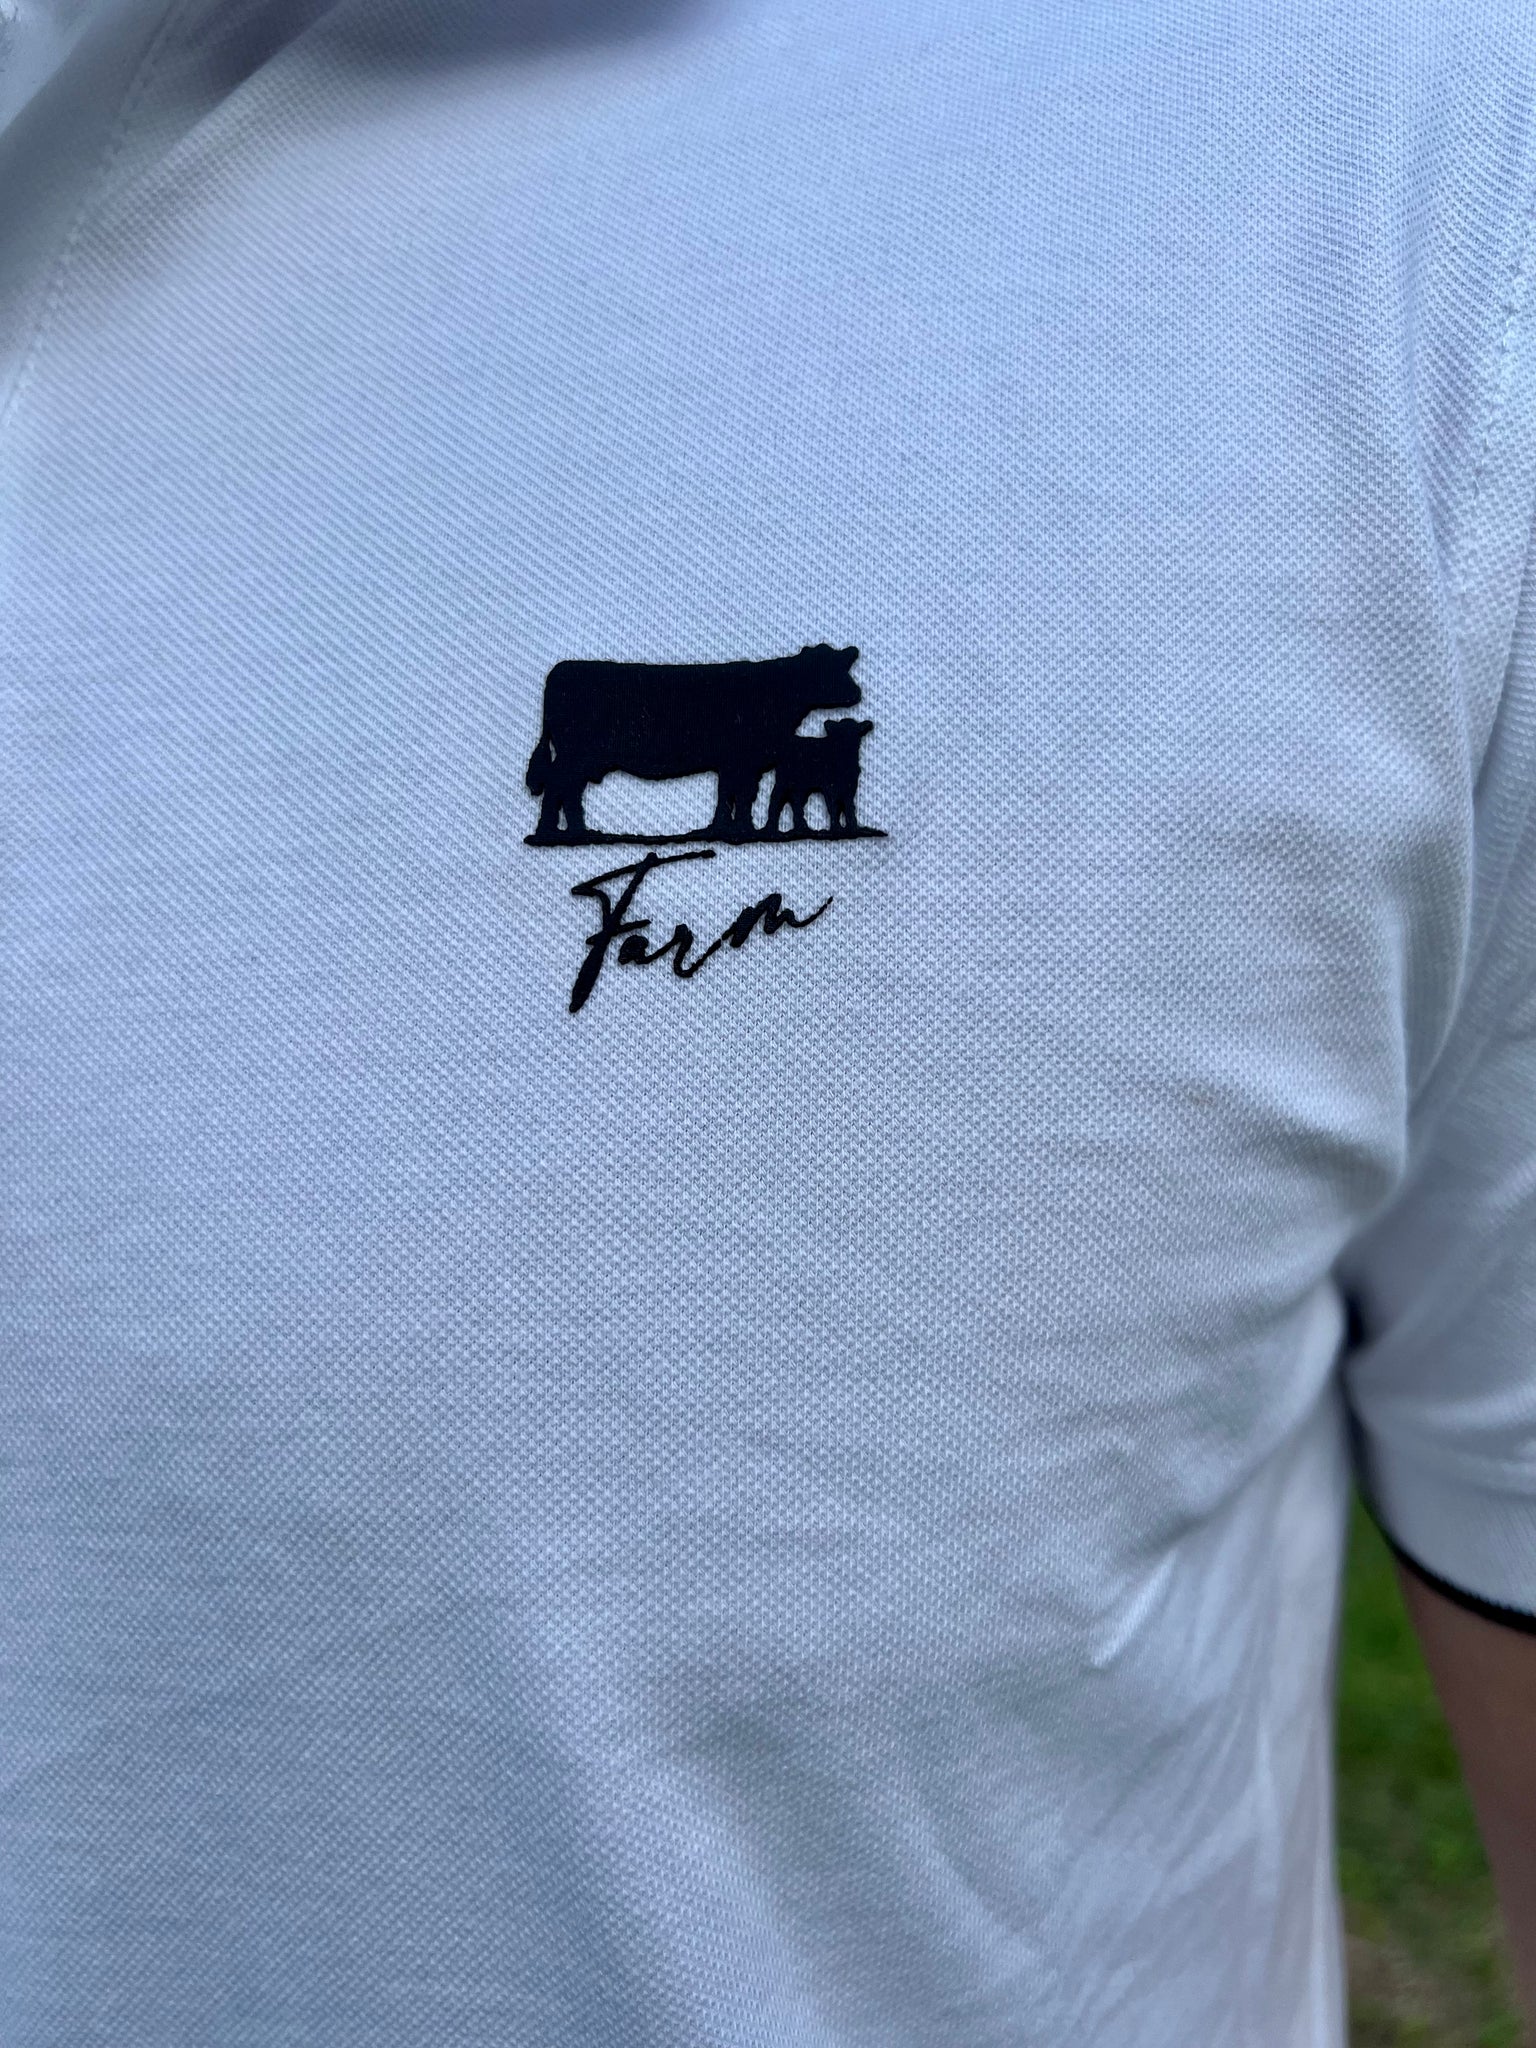 Polo Farm Vaca Cria Blanca 0890